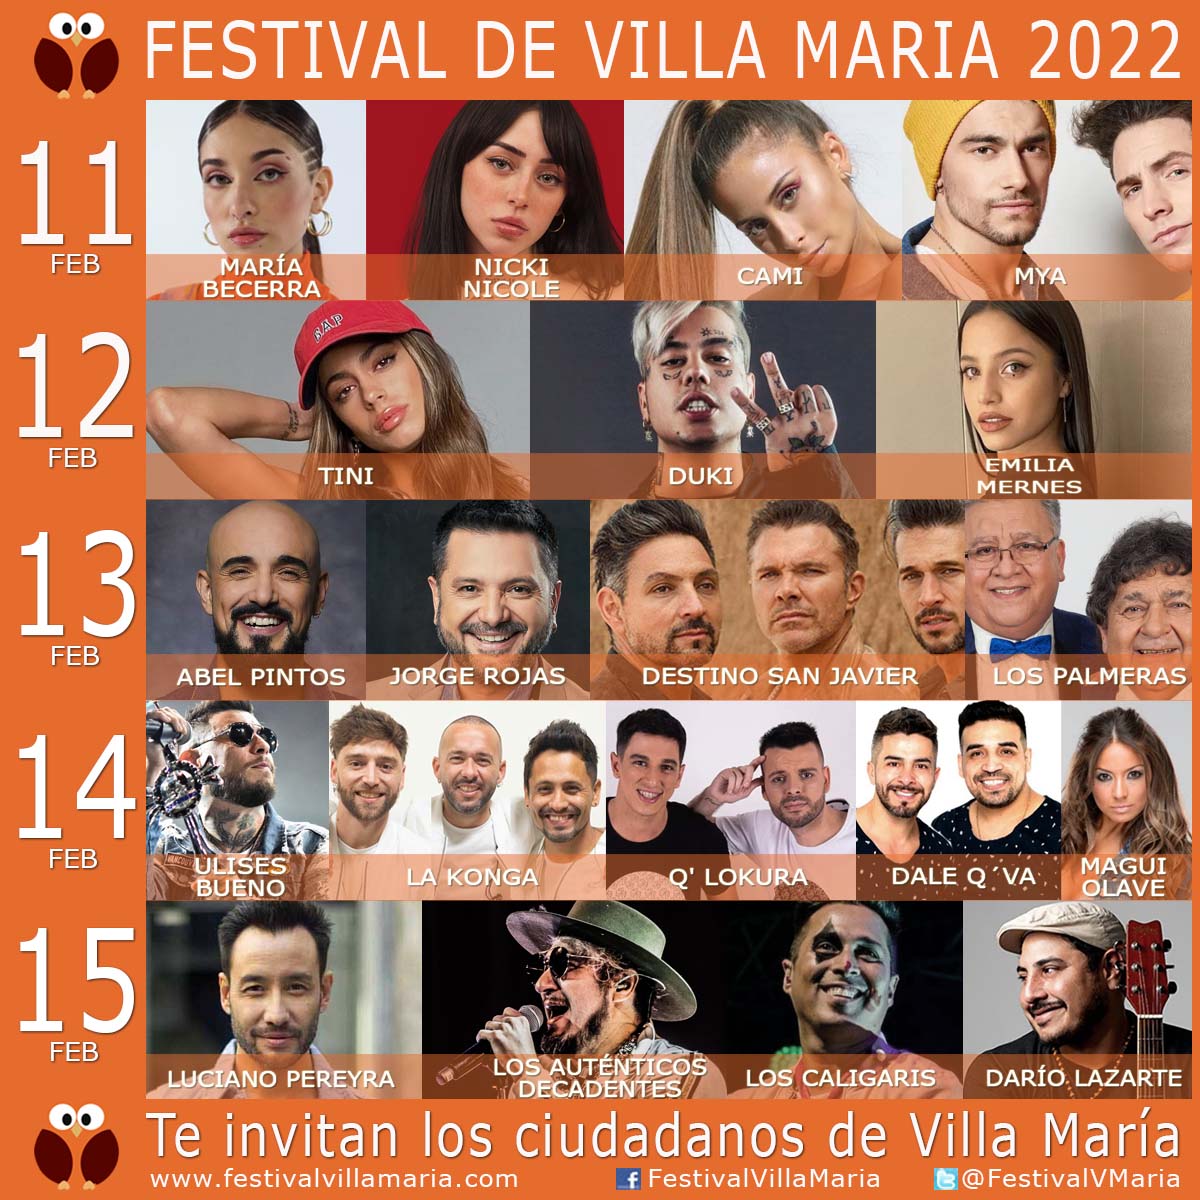 Grilla Artistas Festival de Villa Maria 2022